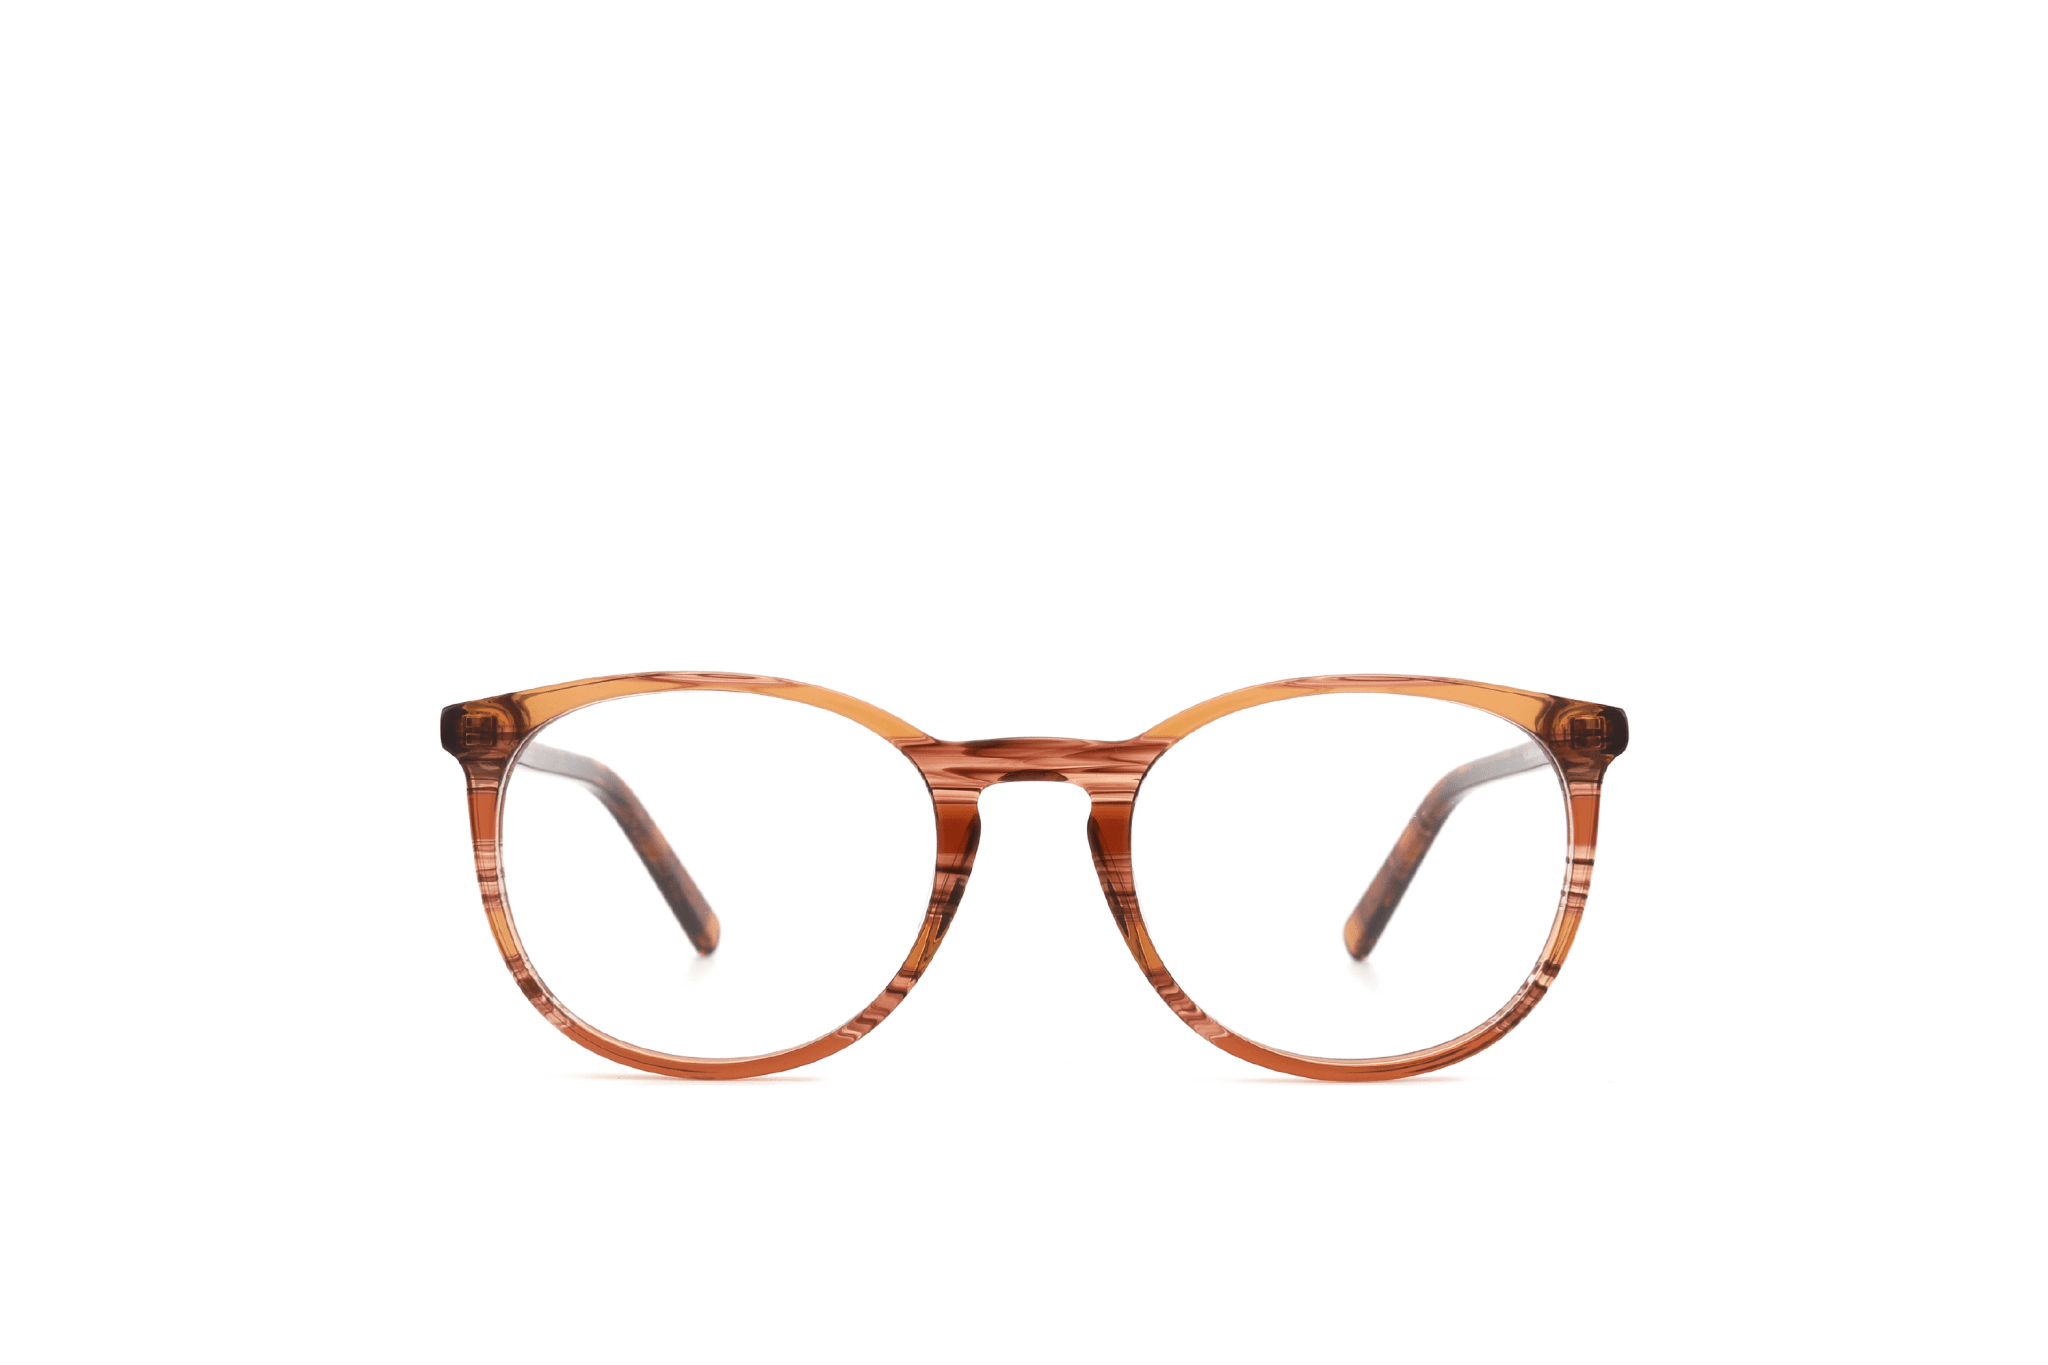 NEW IN - Panto - BONOCLER Eyewear